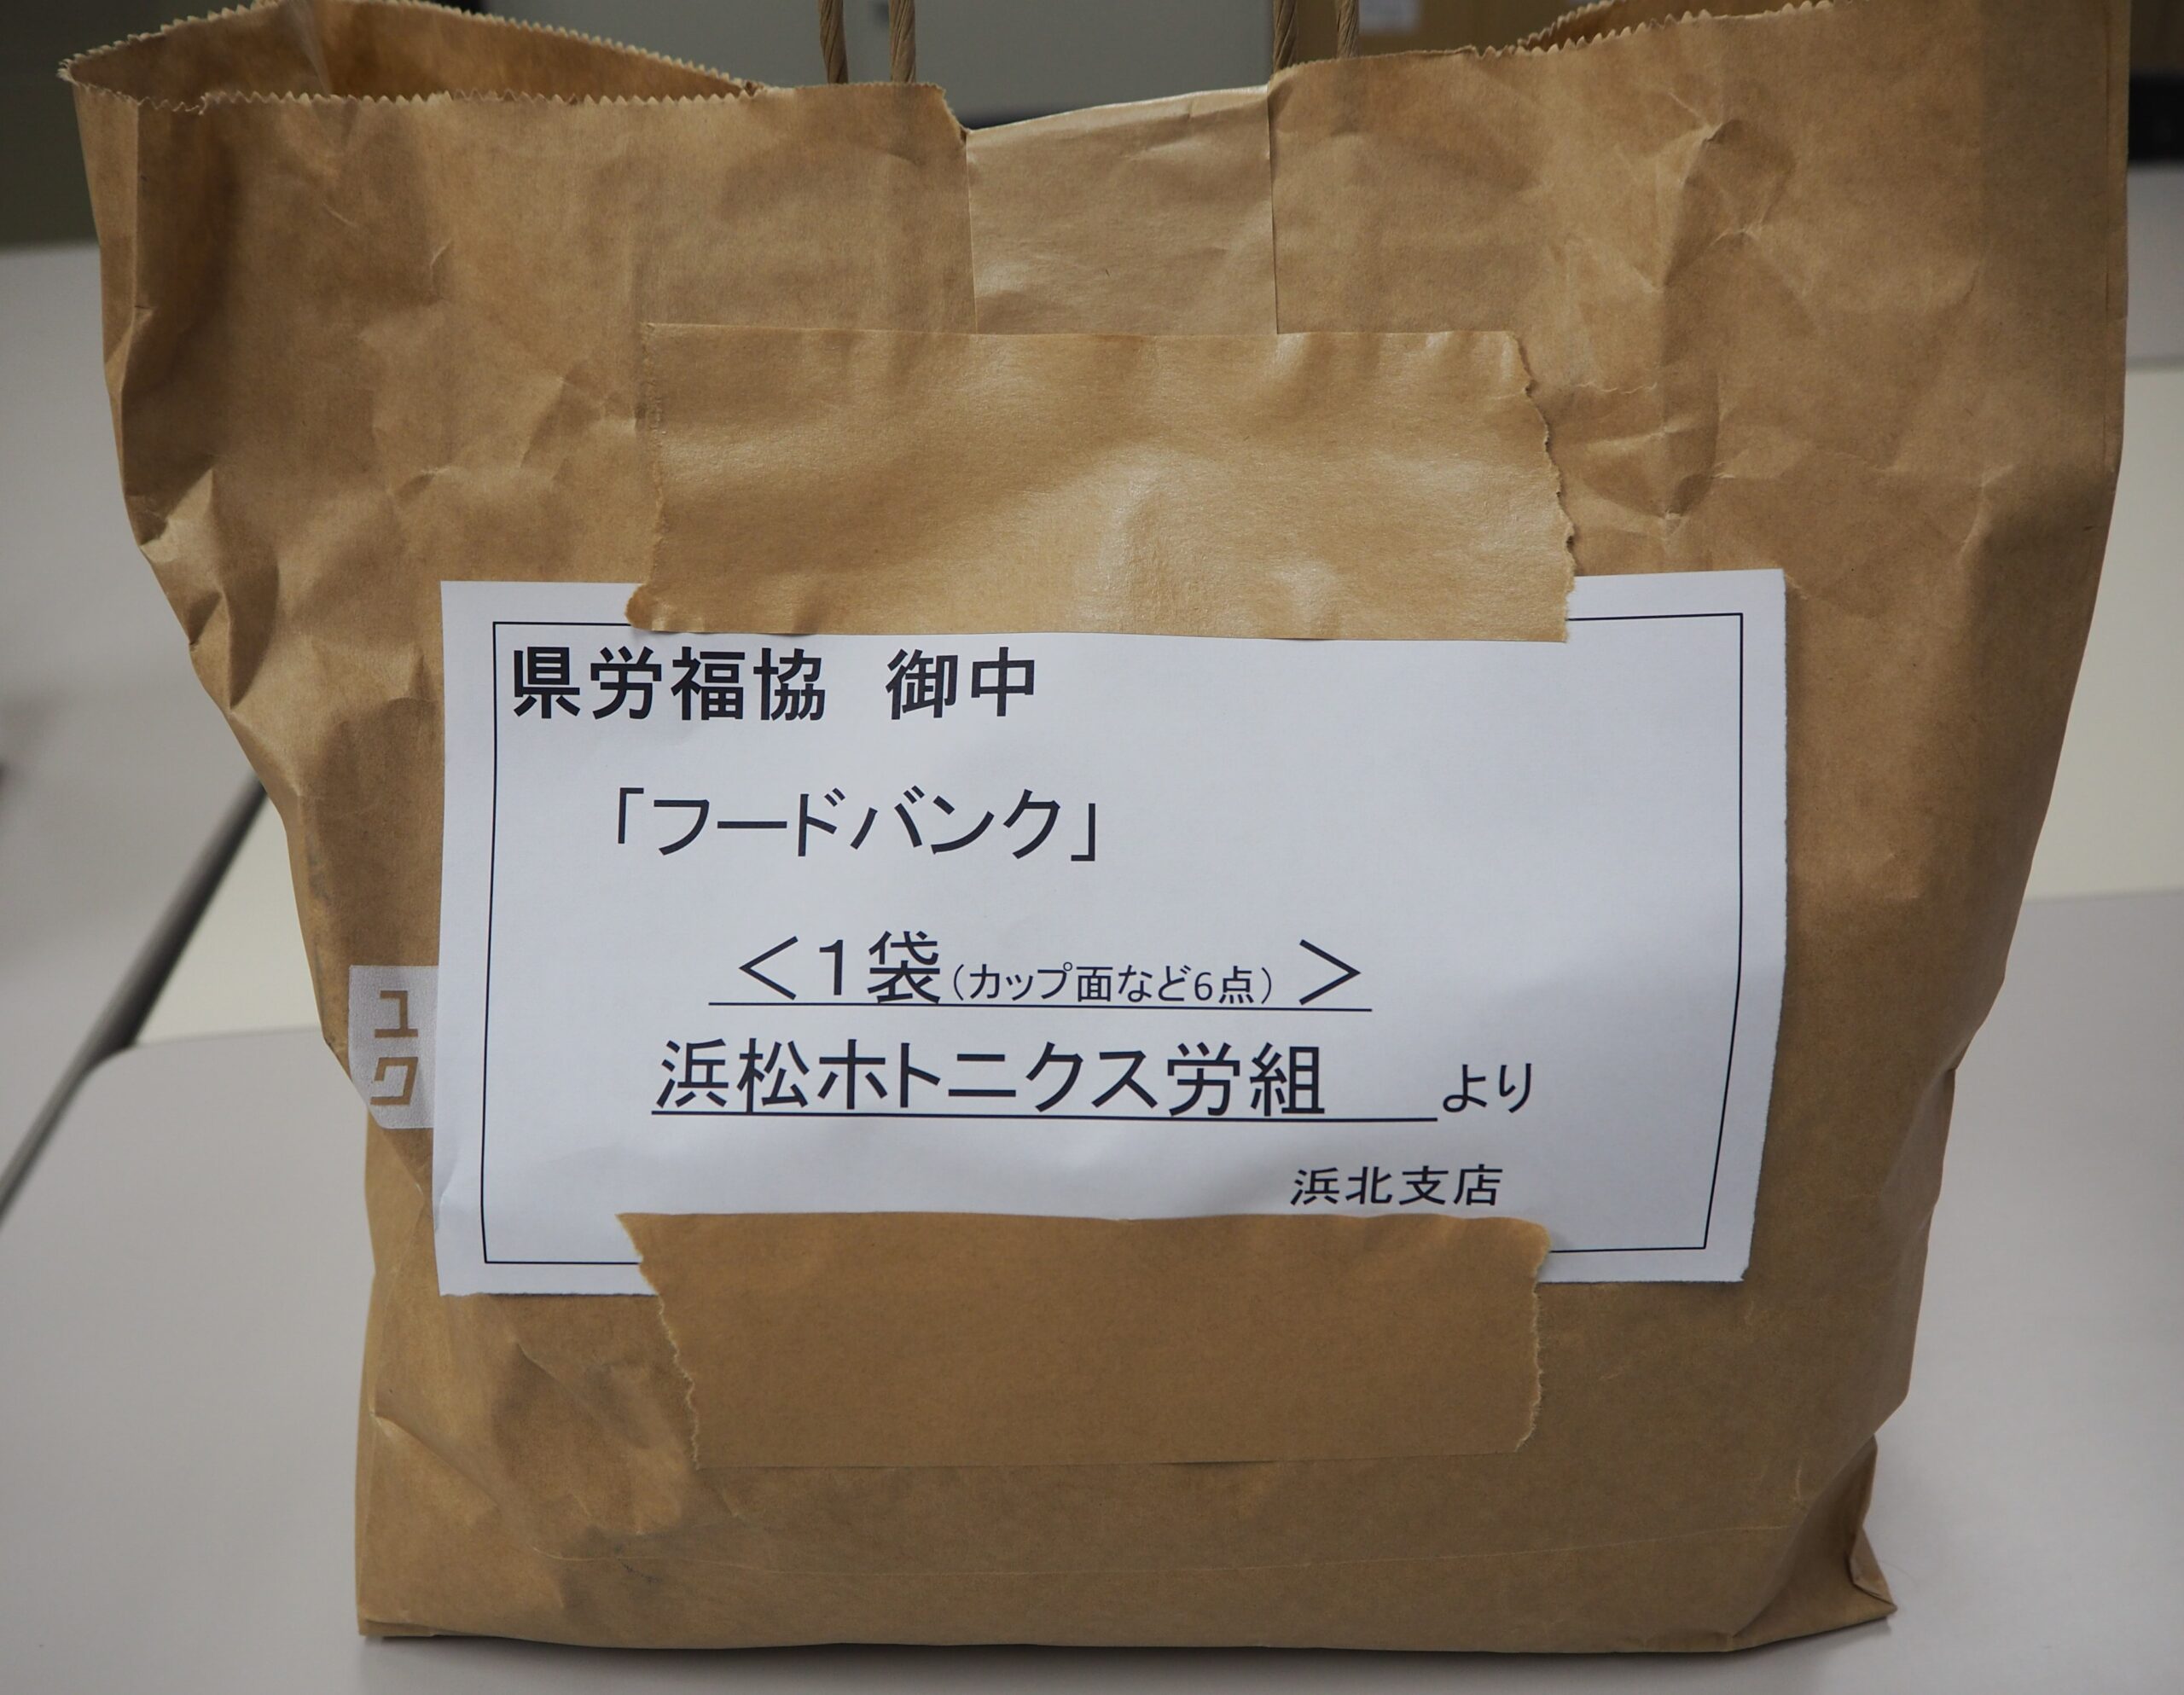 ユタカ技研労組と浜松ホトニクス労組から食品をいただきました。